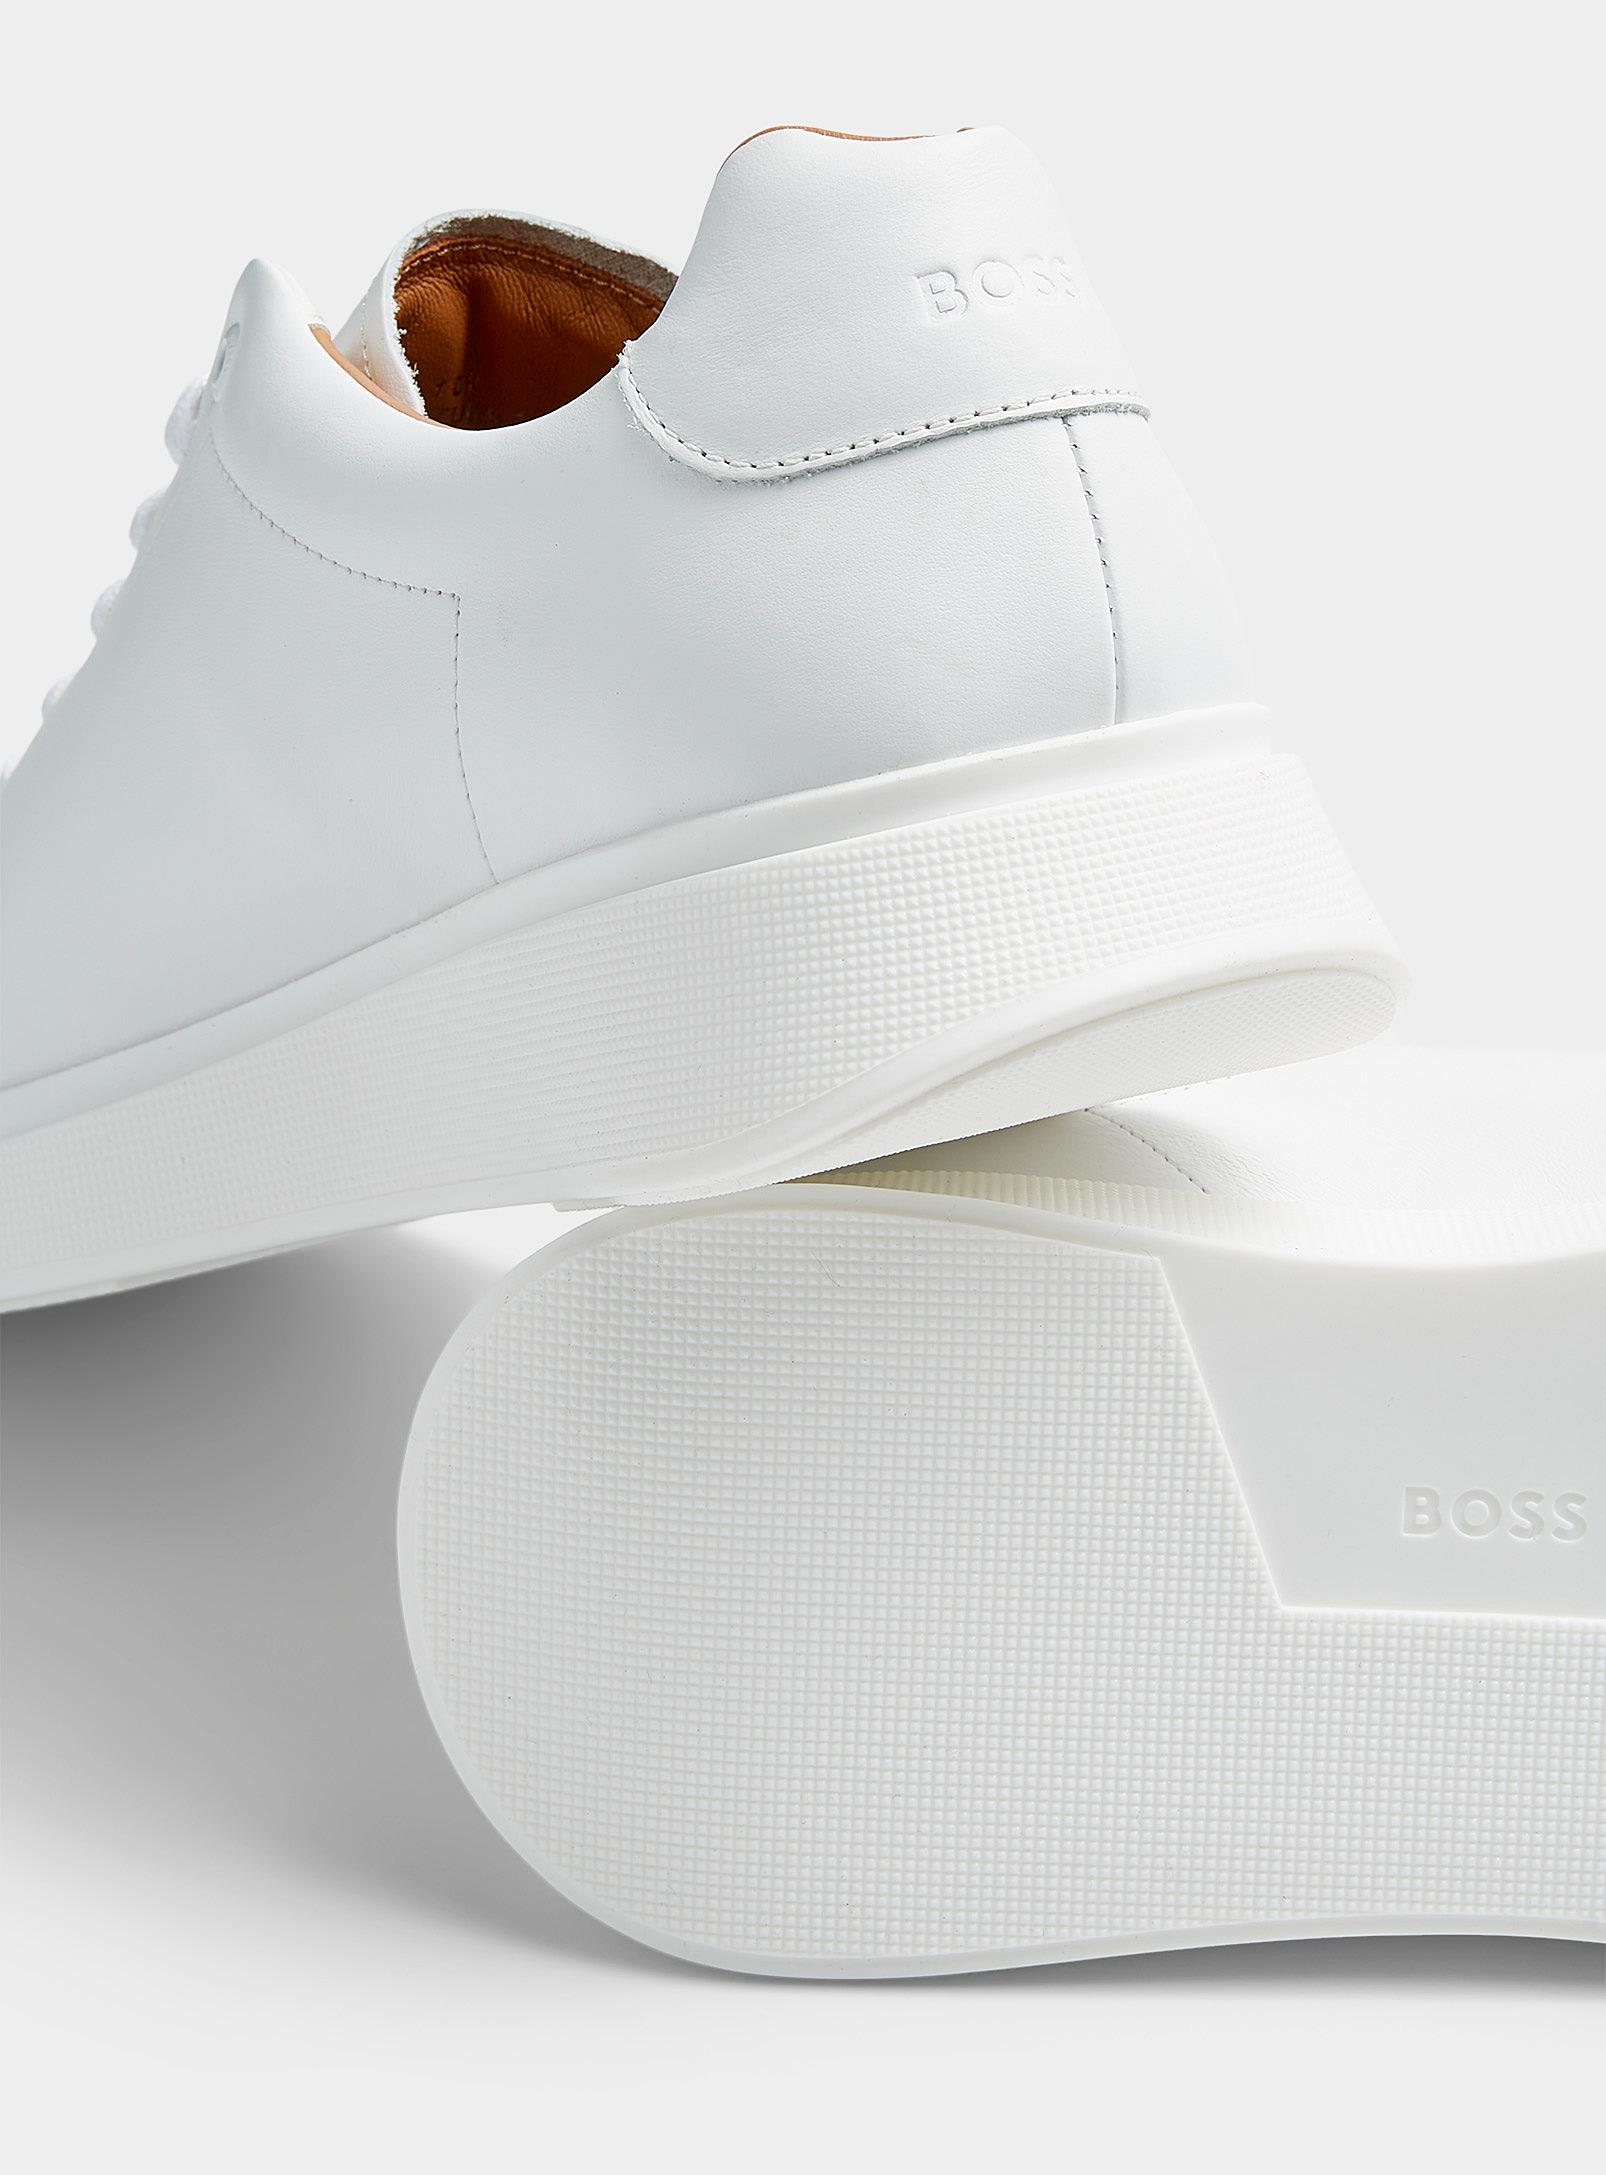 hvad som helst Månenytår Turbulens BOSS by HUGO BOSS Sleek Leather Sneaker Men in White for Men | Lyst